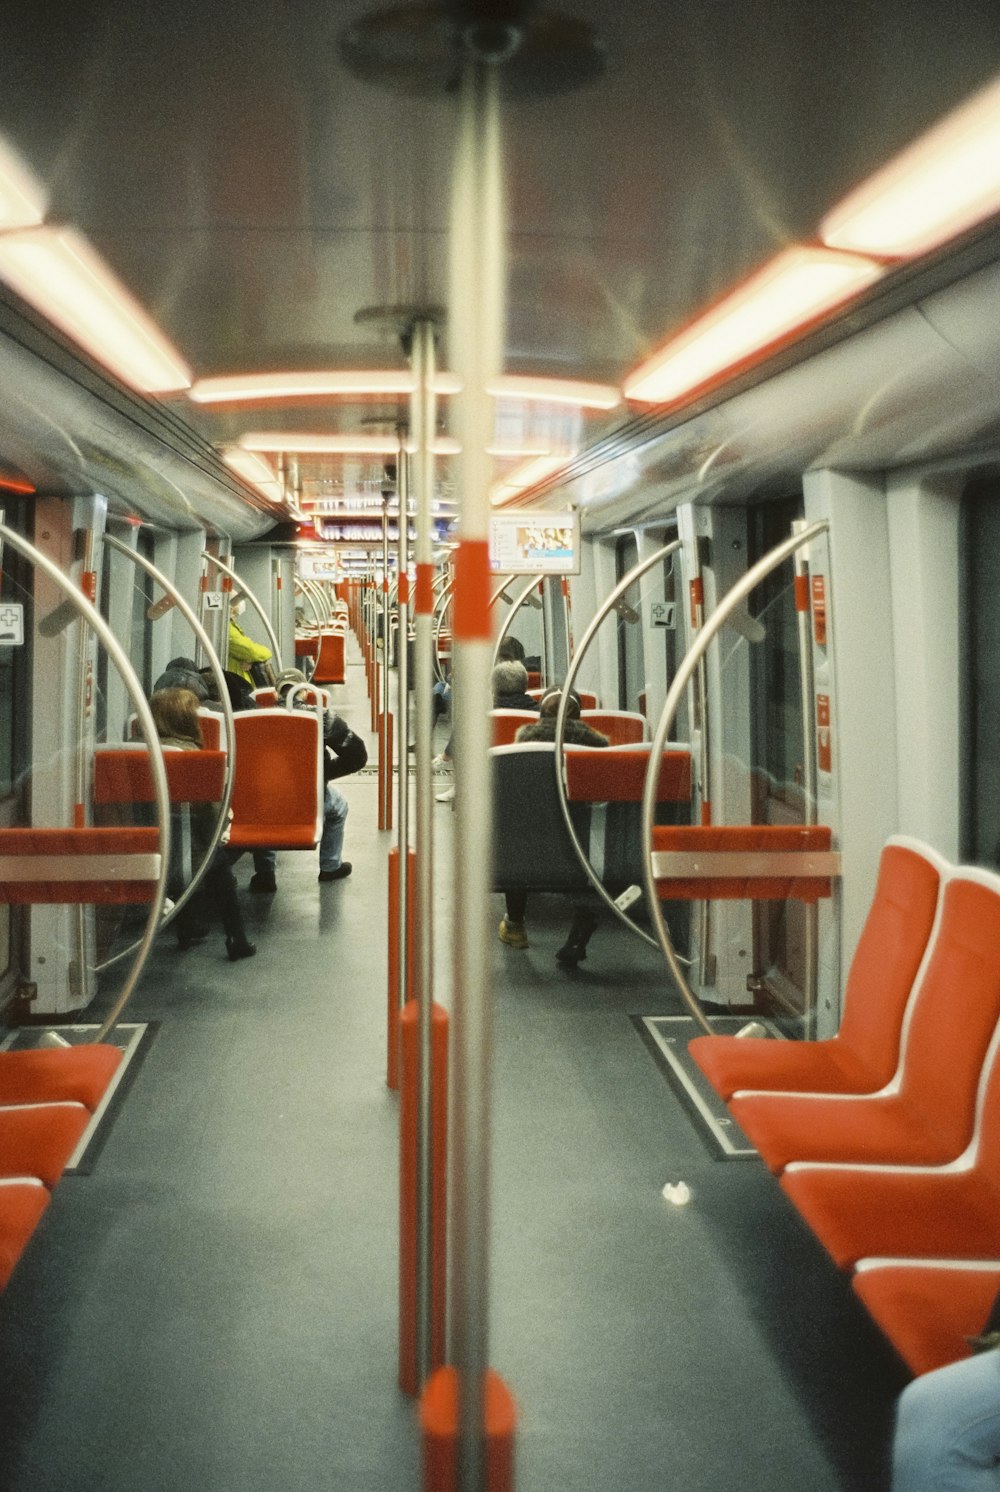 オレンジ色の座席を持つ列車